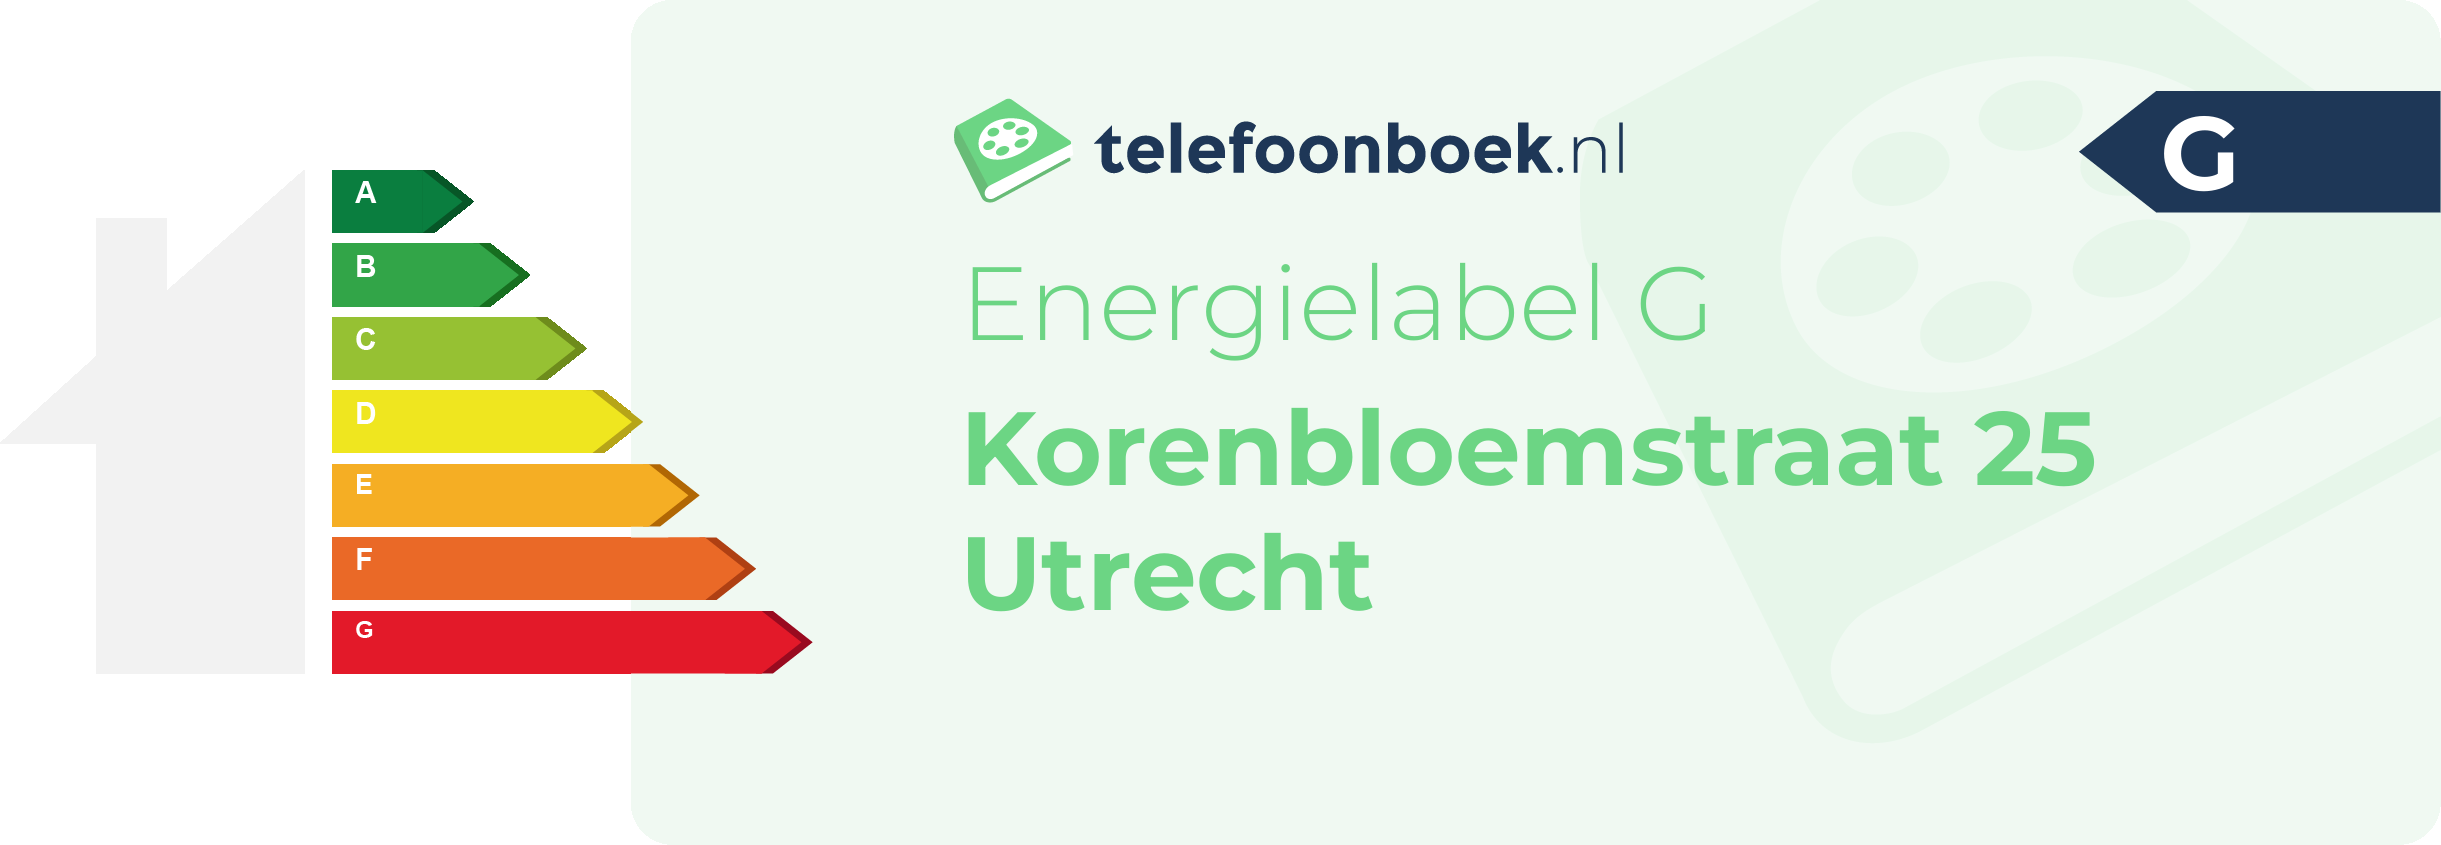 Energielabel Korenbloemstraat 25 Utrecht